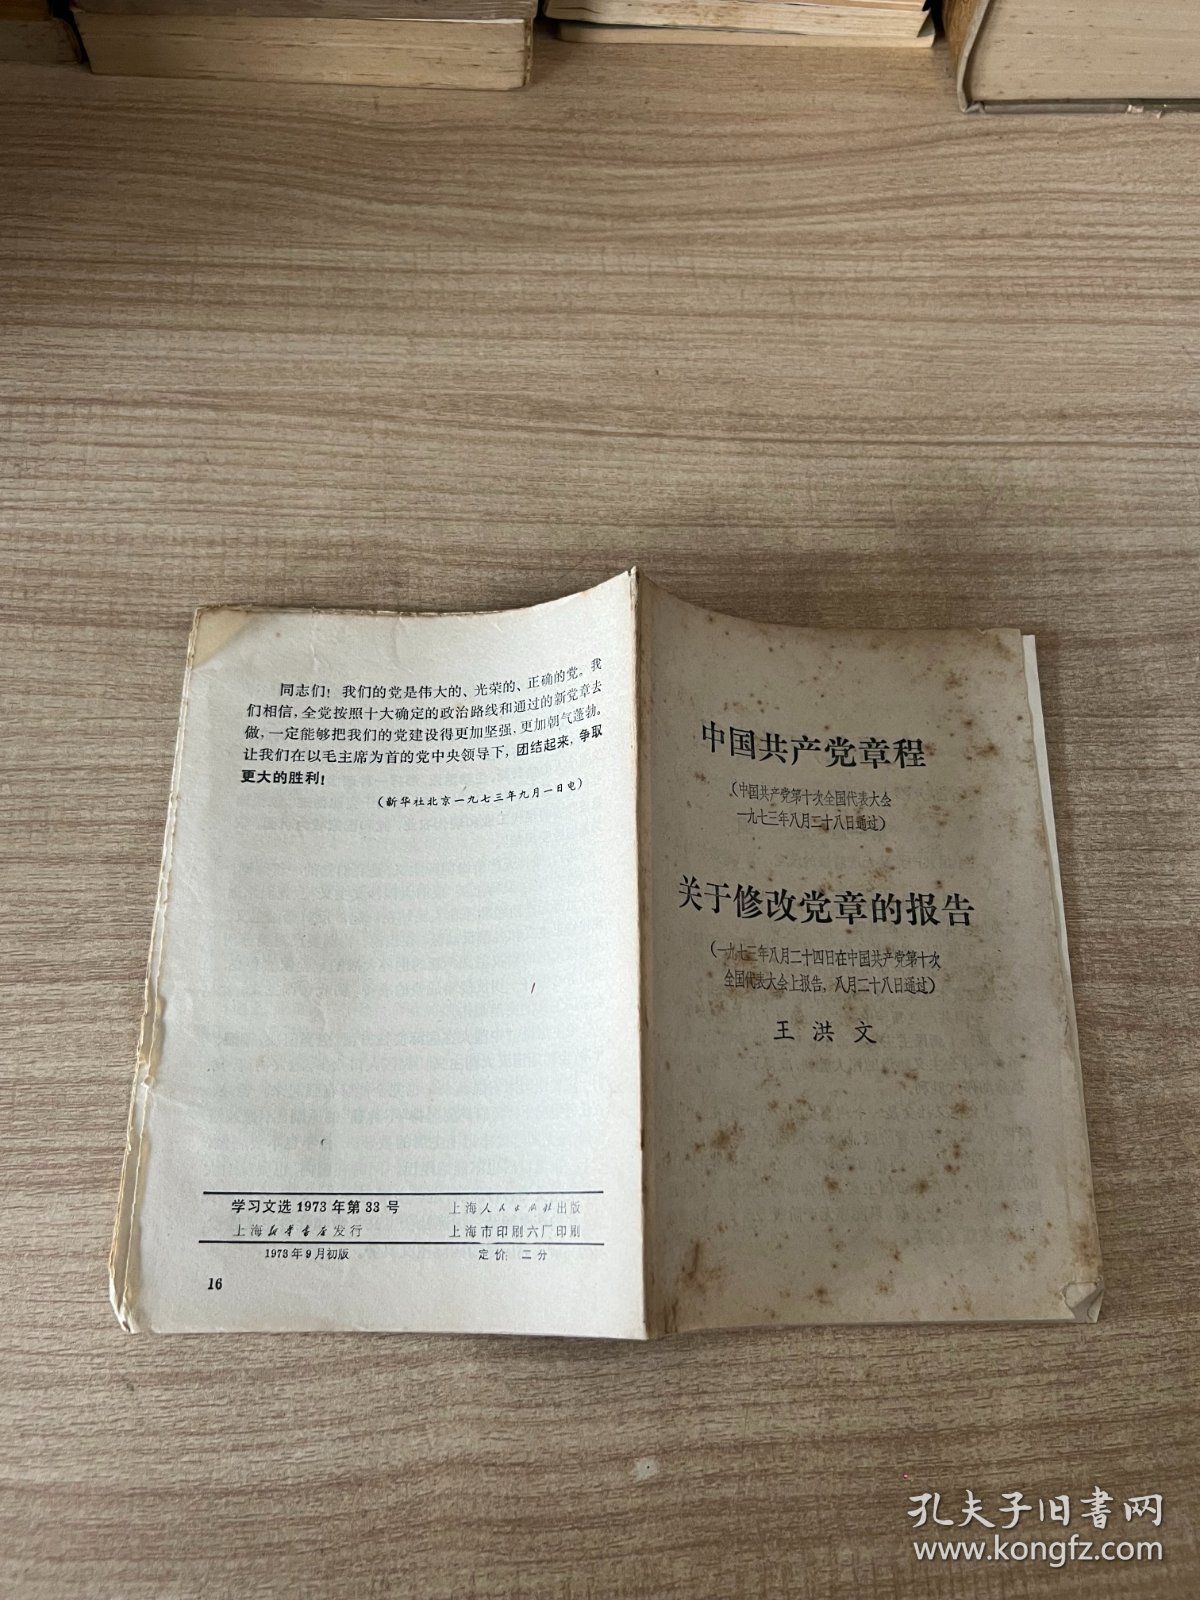 中国共产党章程 关于修改党章的报告 学习文选 1973年第33号